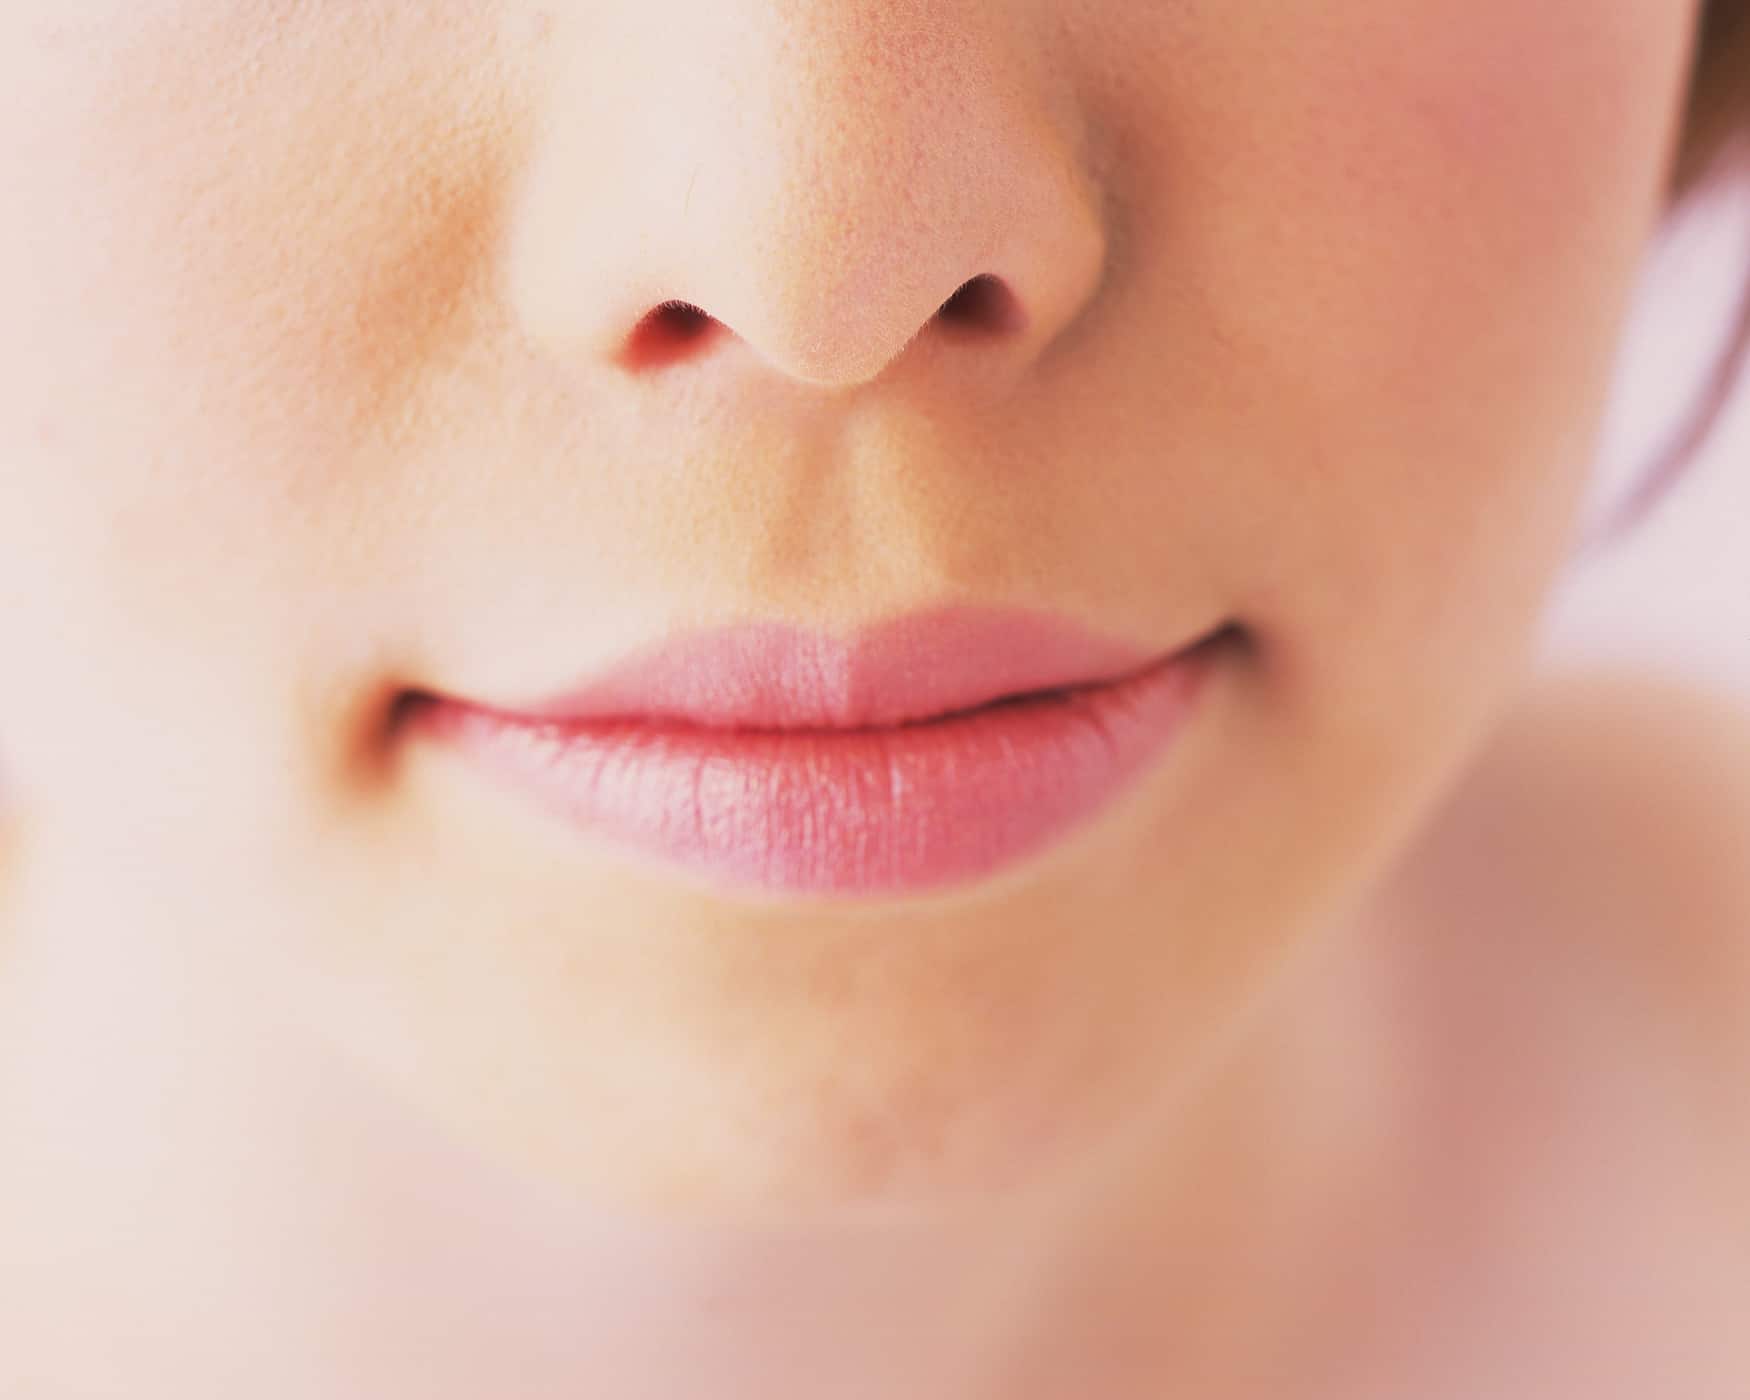 lūpų spalva ir sveikatos sąlygos